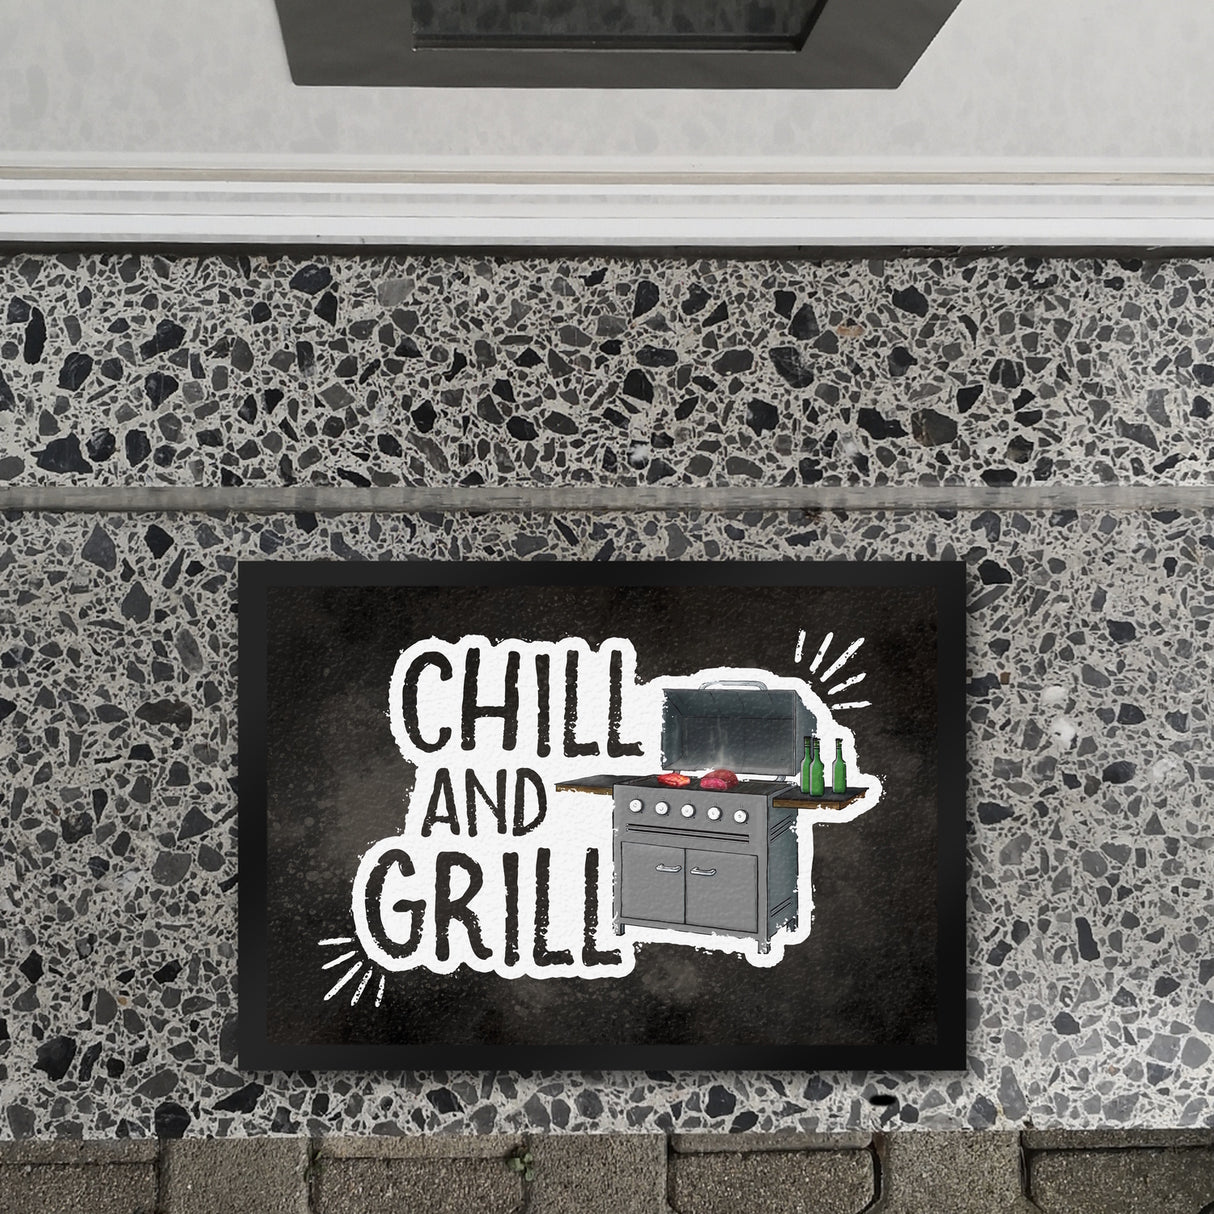 Chill and grill Fußmatte mit Elektrogrill Motiv